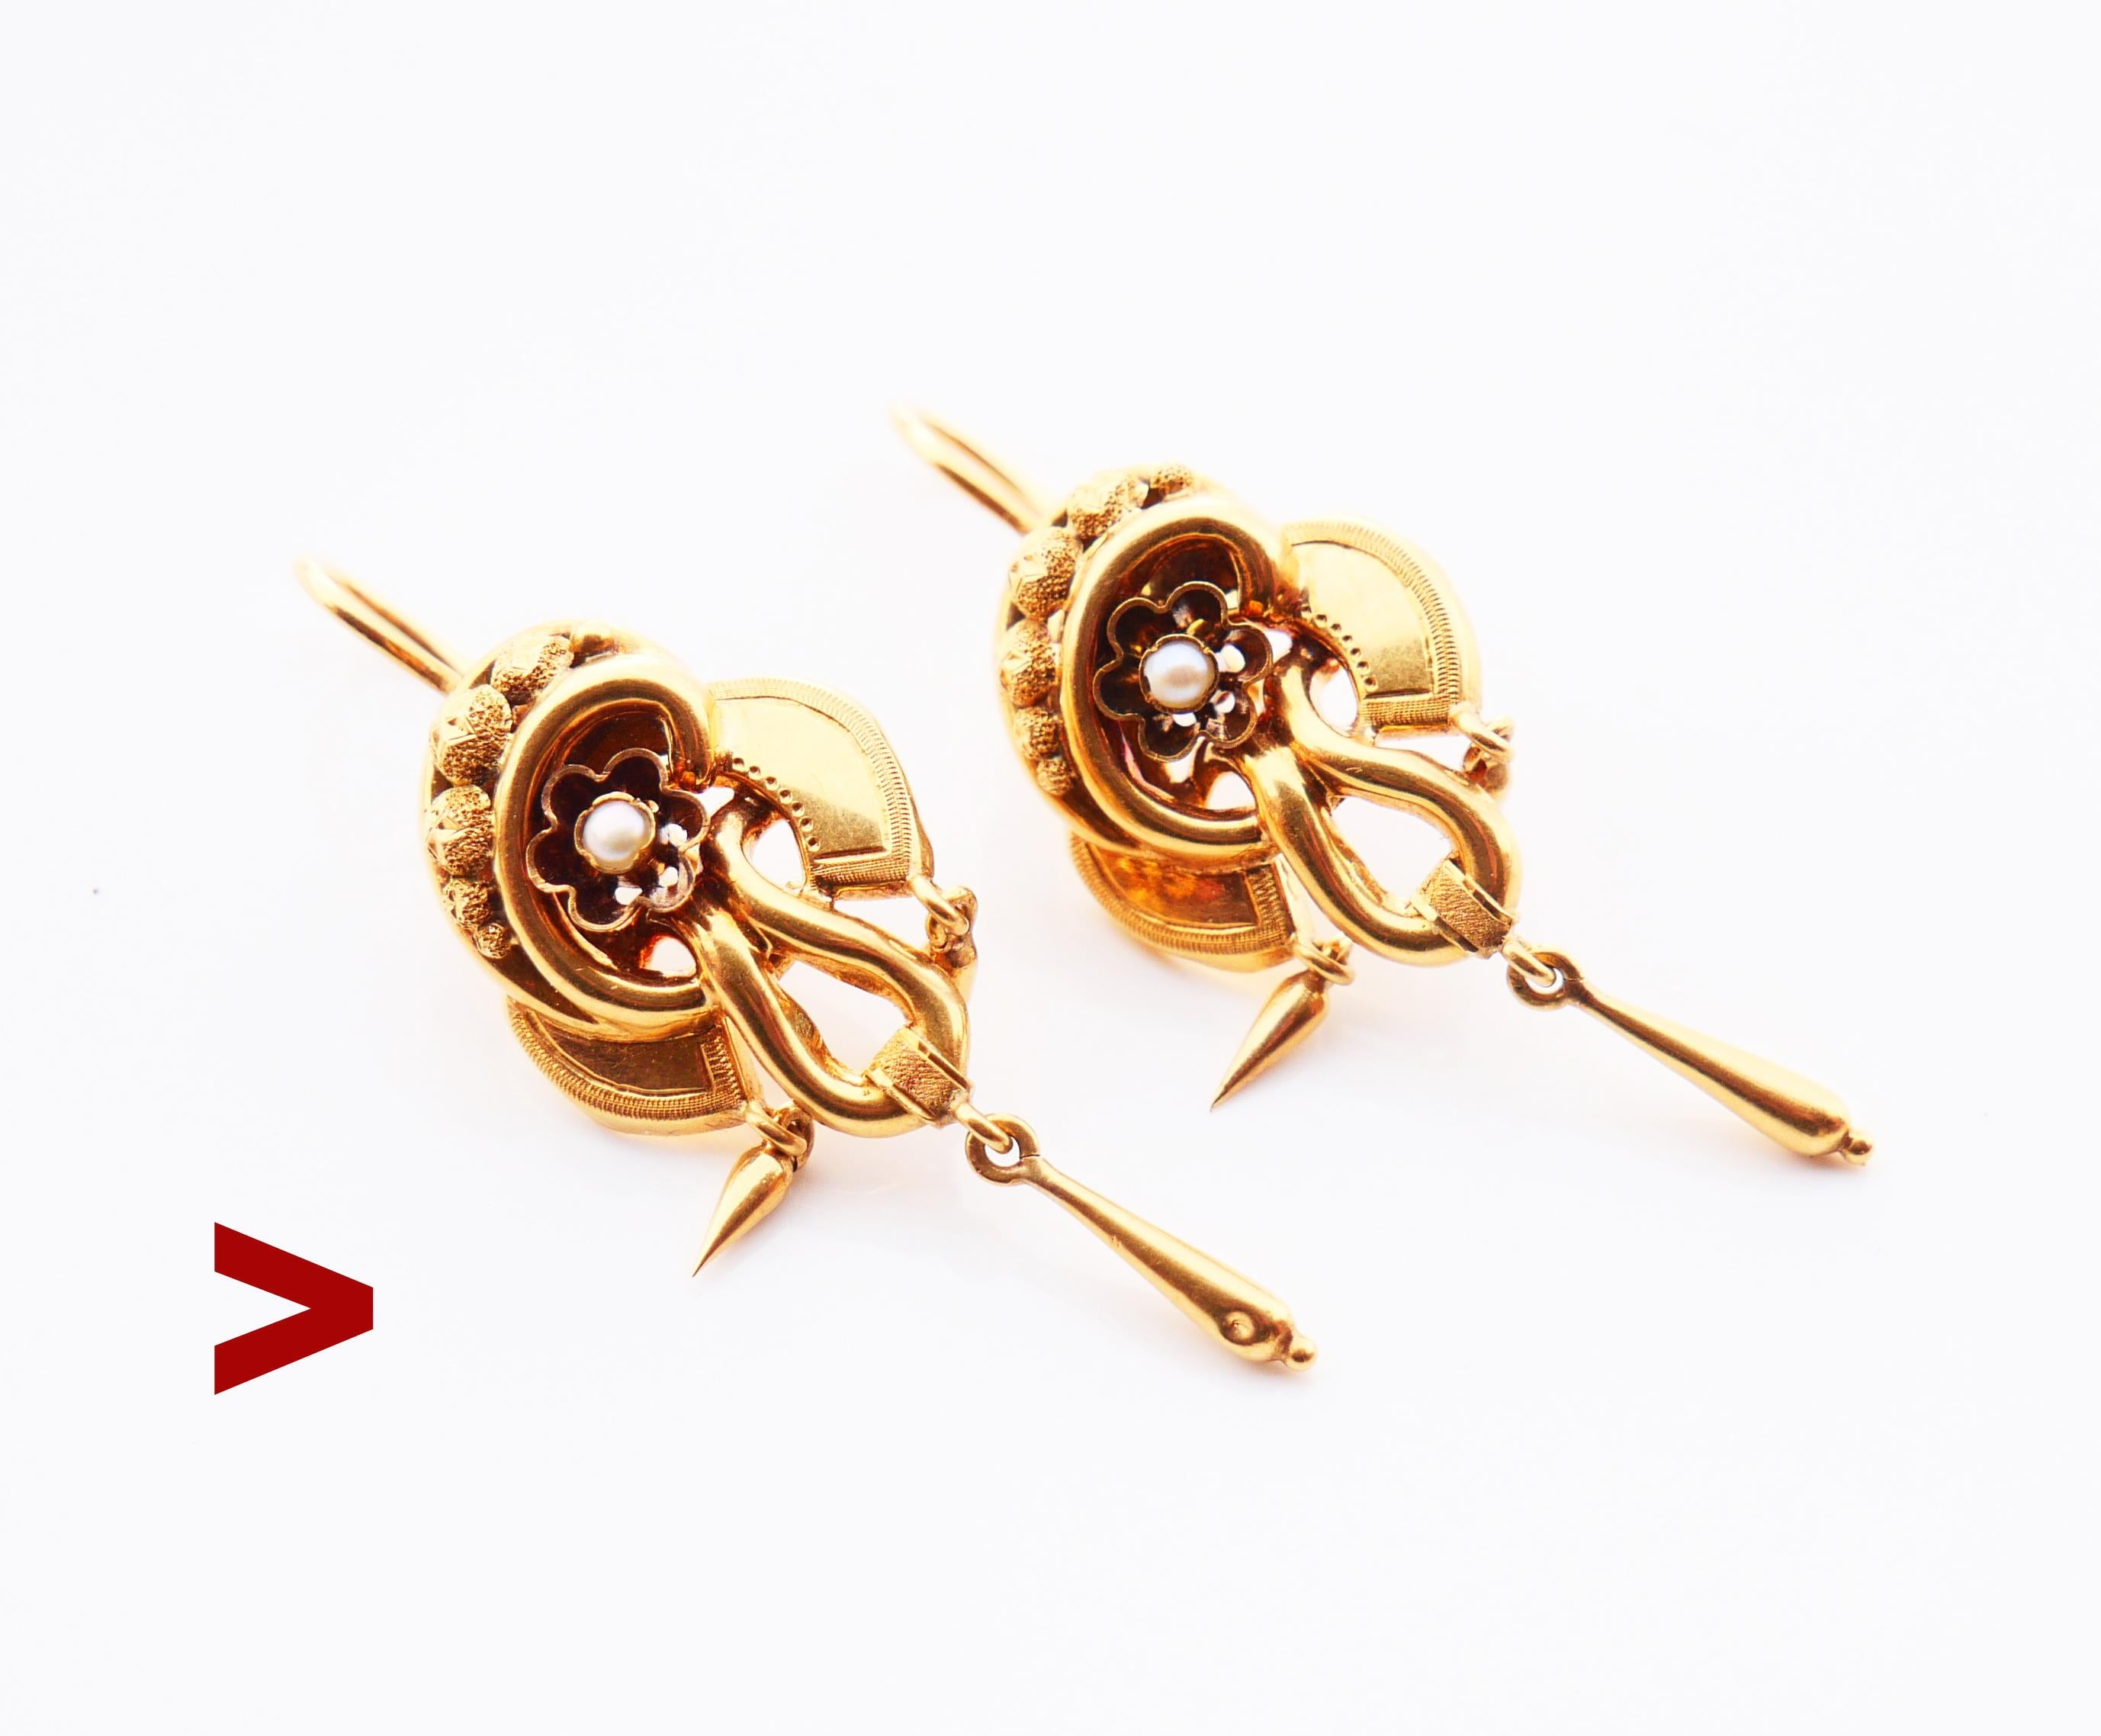 
Ein Paar antike Ohrringe mit zarten dreistufigen Körpern, verziert mit natürlichen Saatperlen und gravierten Ornamenten.

Frei hängende tropfenförmige Anhänger vervollständigen dieses Design.

Schwedische Punzen auf beiden, markiert 18K Gold,